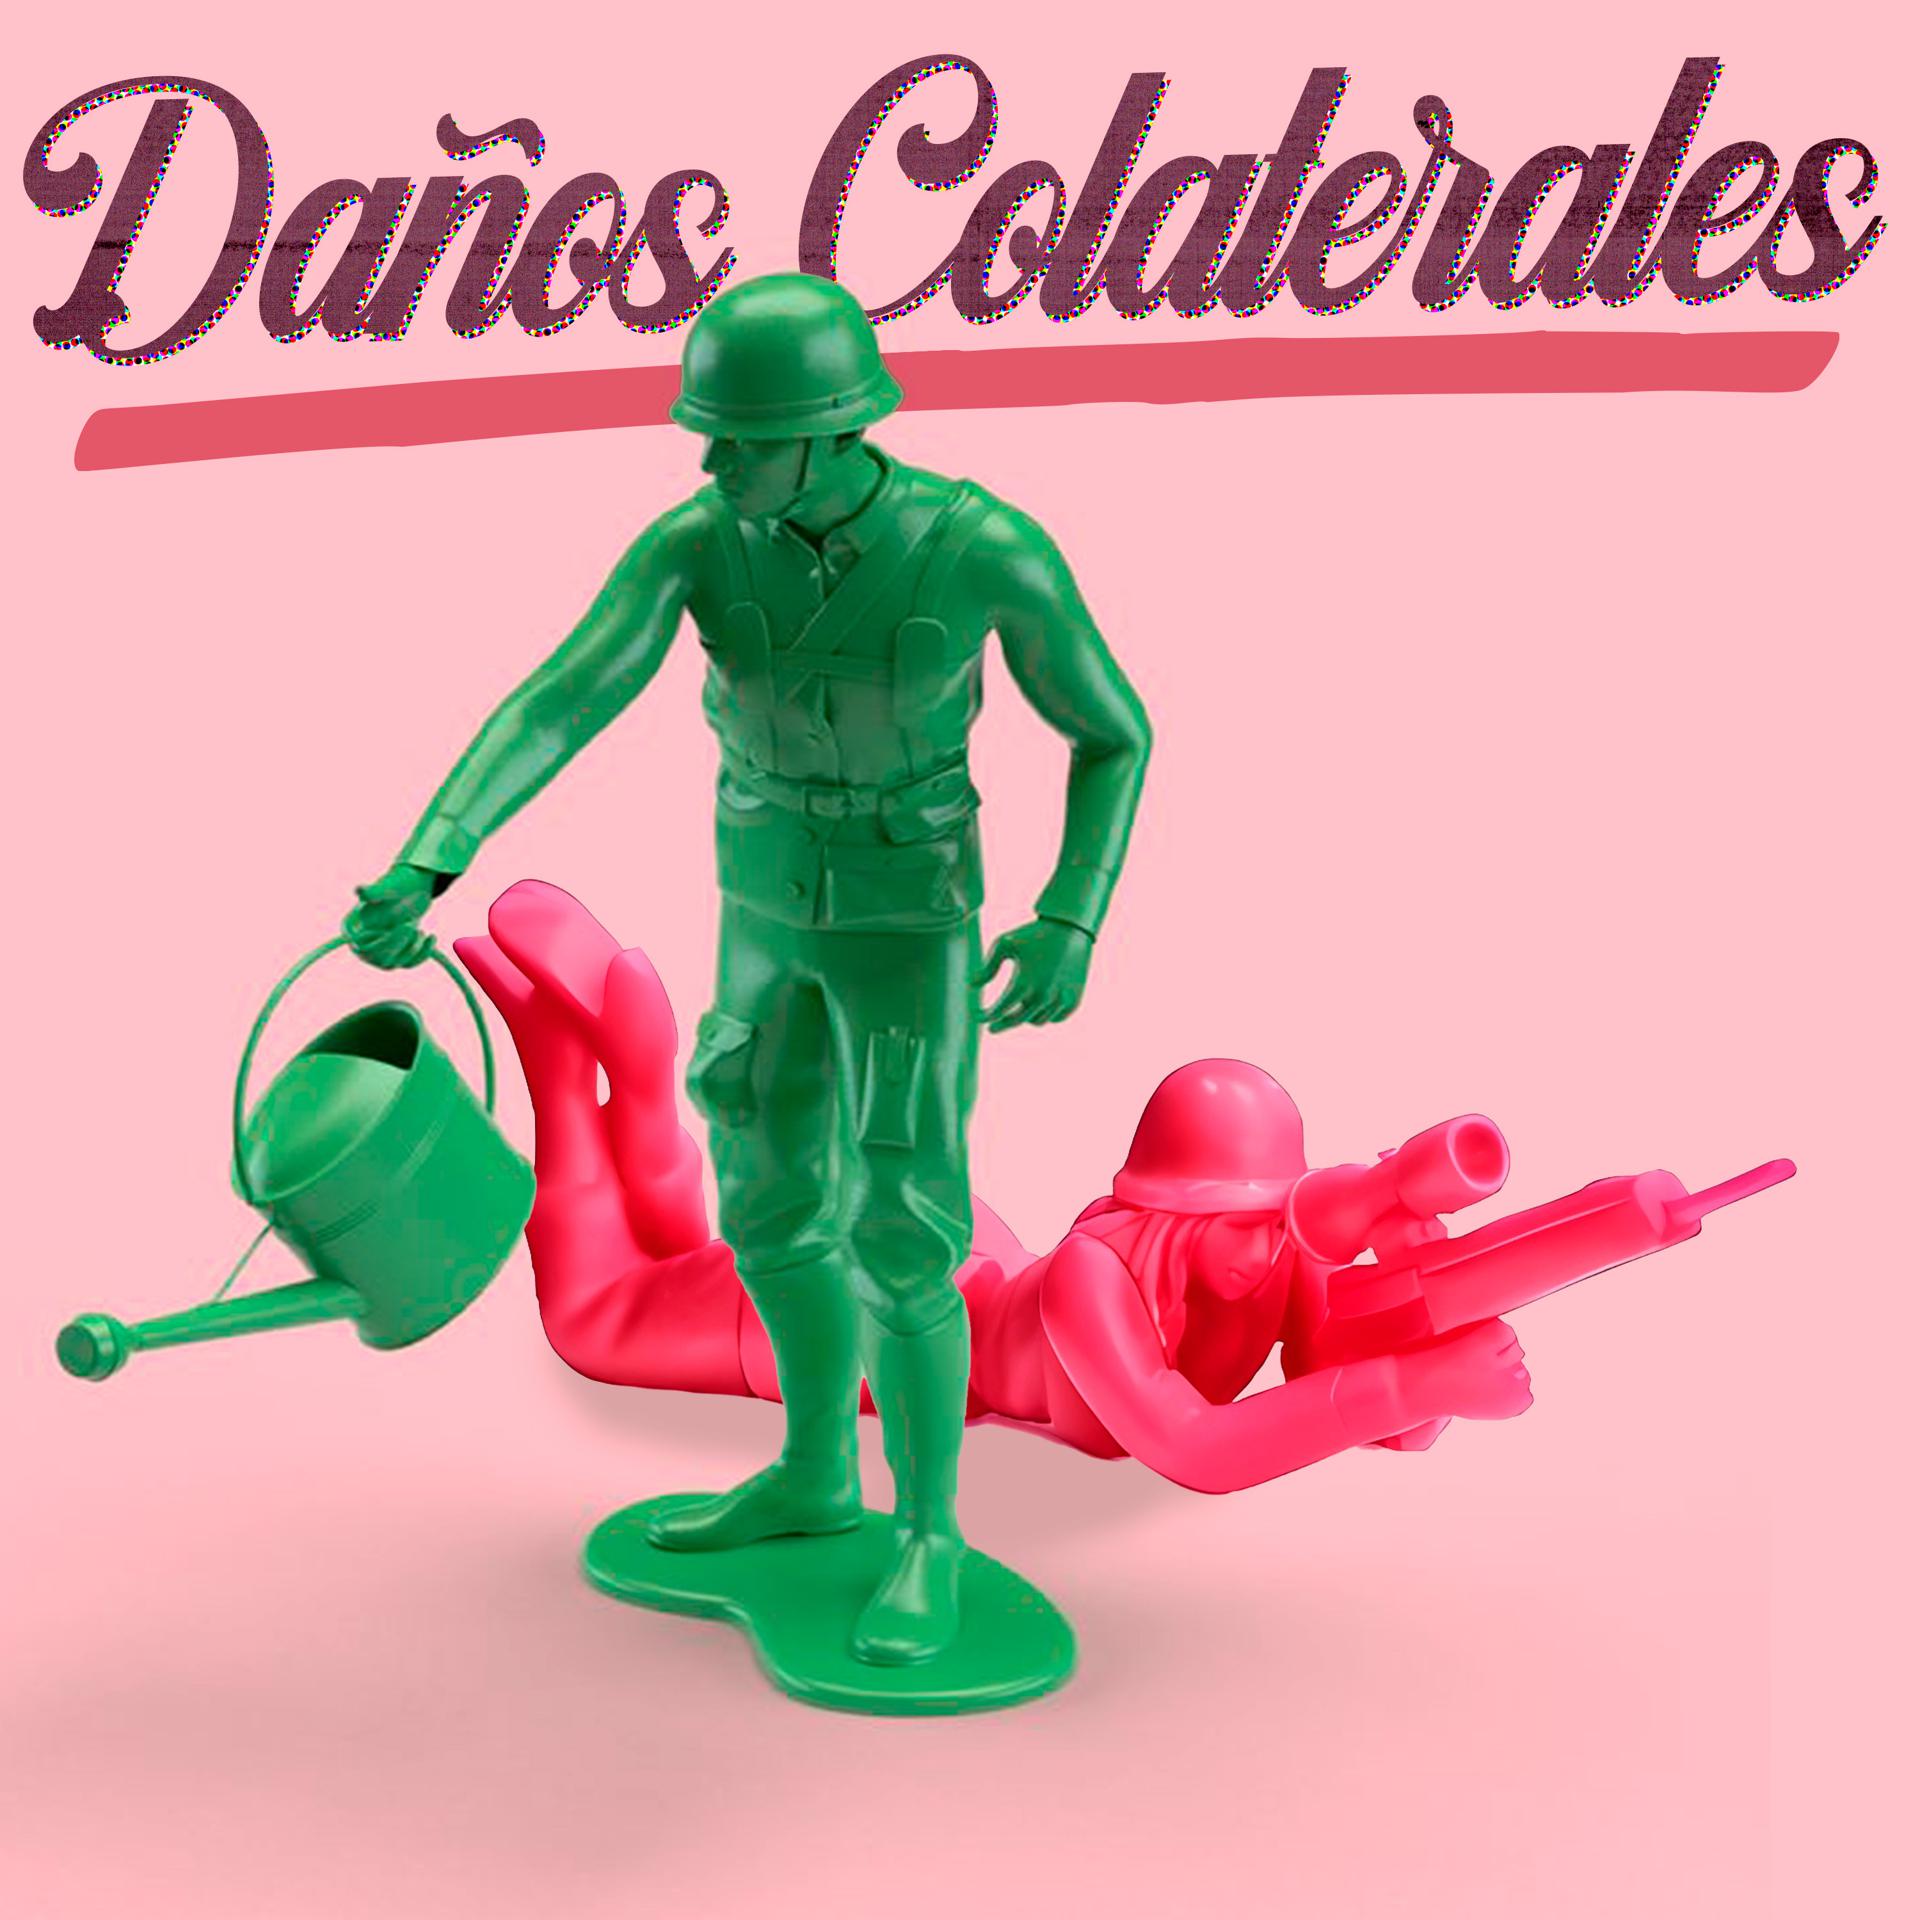 Постер альбома Daños Colaterales